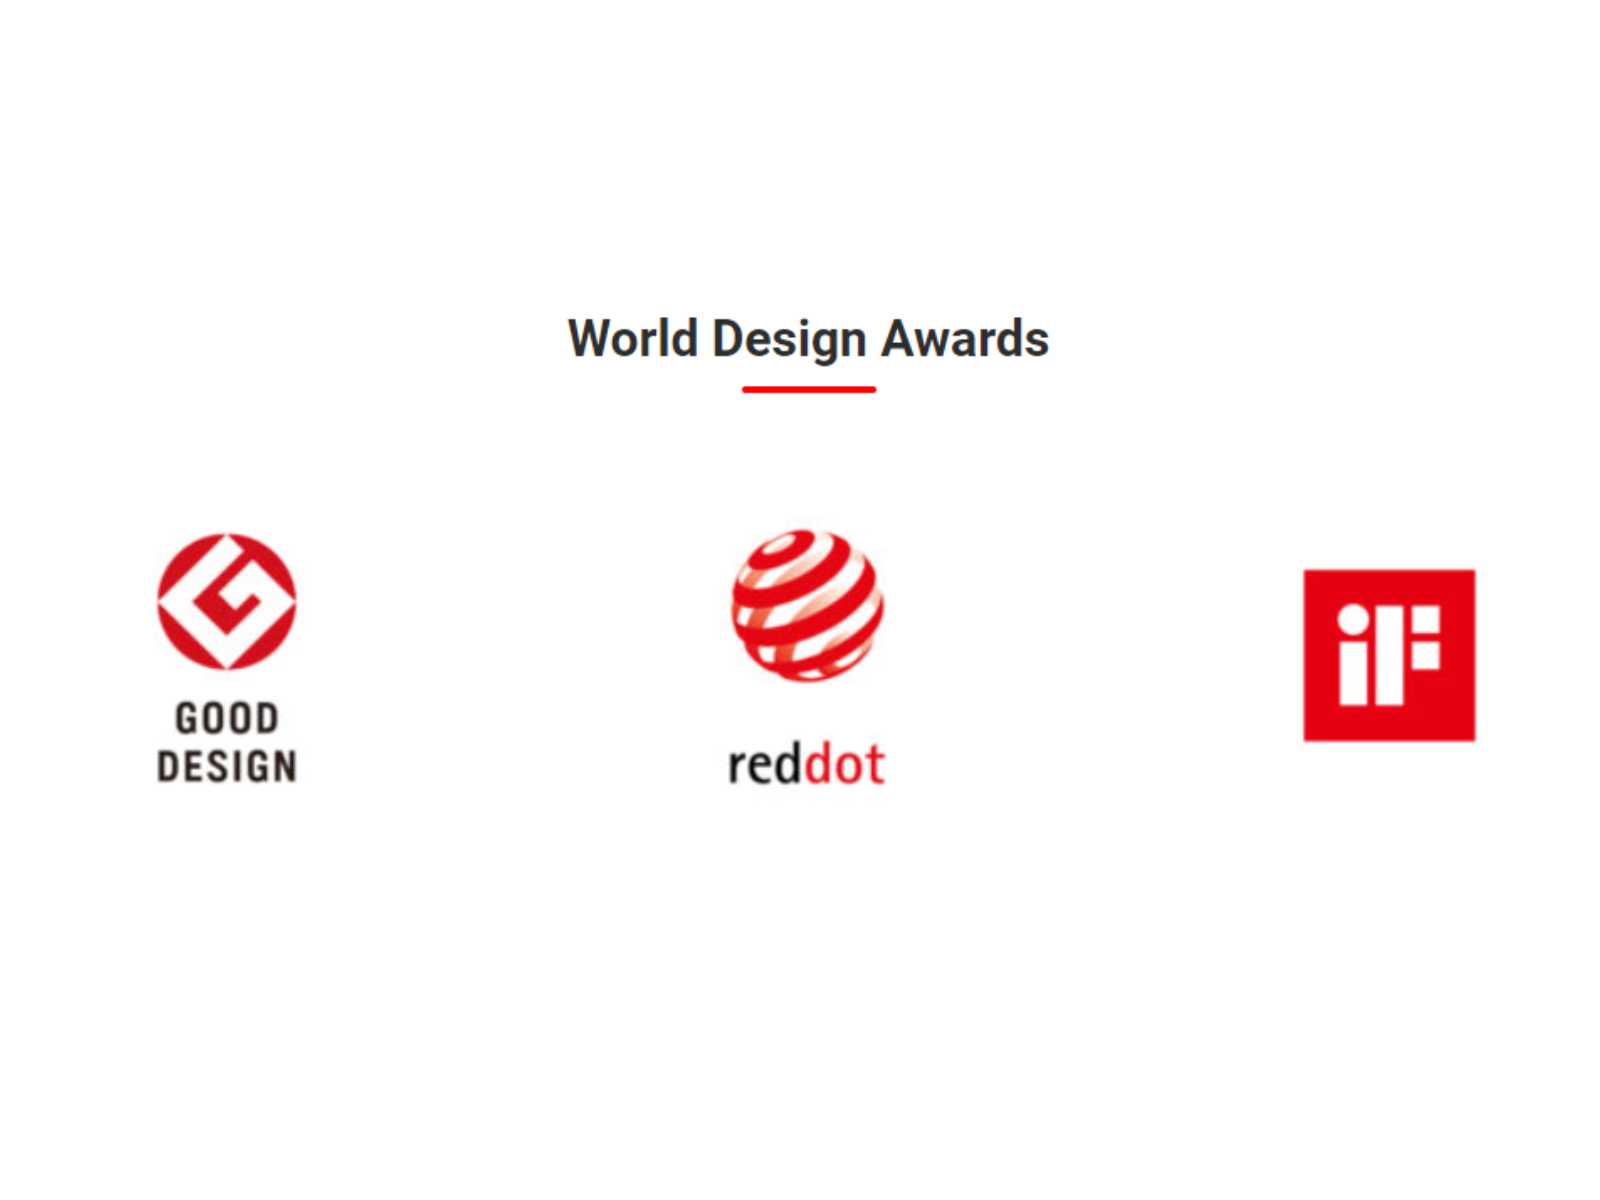 「OROCHI X10」シリーズが受賞したデザイン賞。左から、グッドデザインアワード、レッドドット・デザインアワード、iFデザインアワード。&copy;釣りビジョン